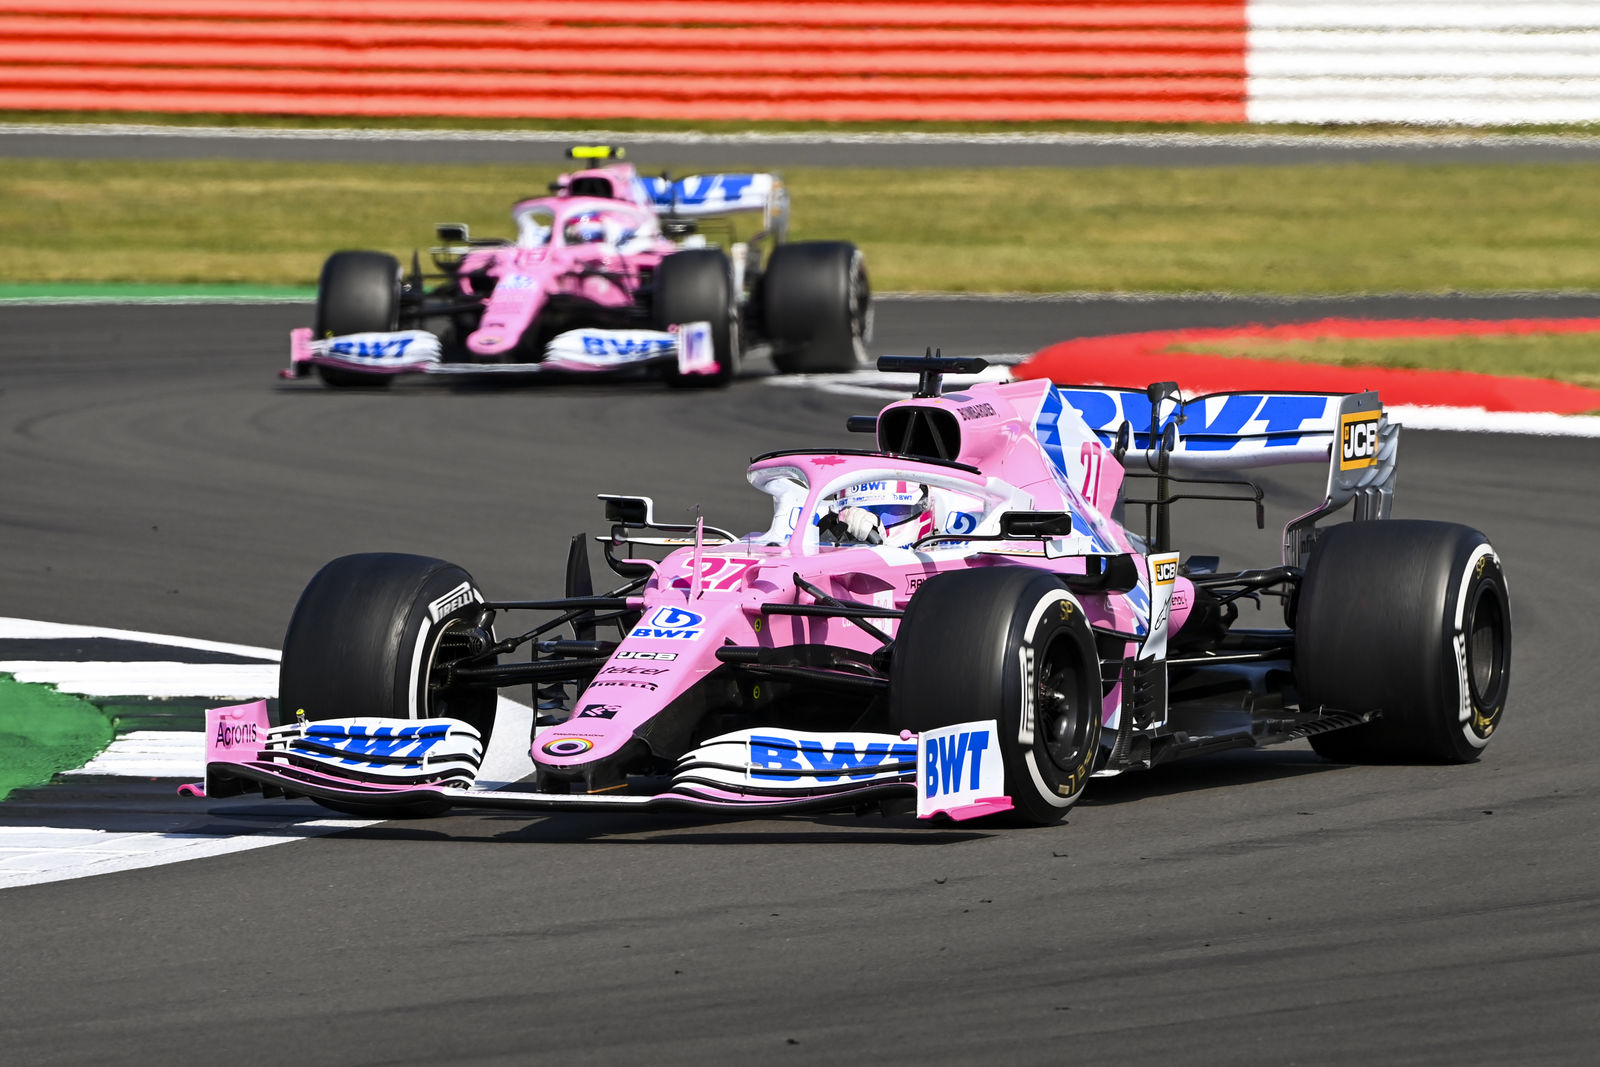 F1 - Officiel : Simple réprimande pour l'équipe Racing Point à Silverstone